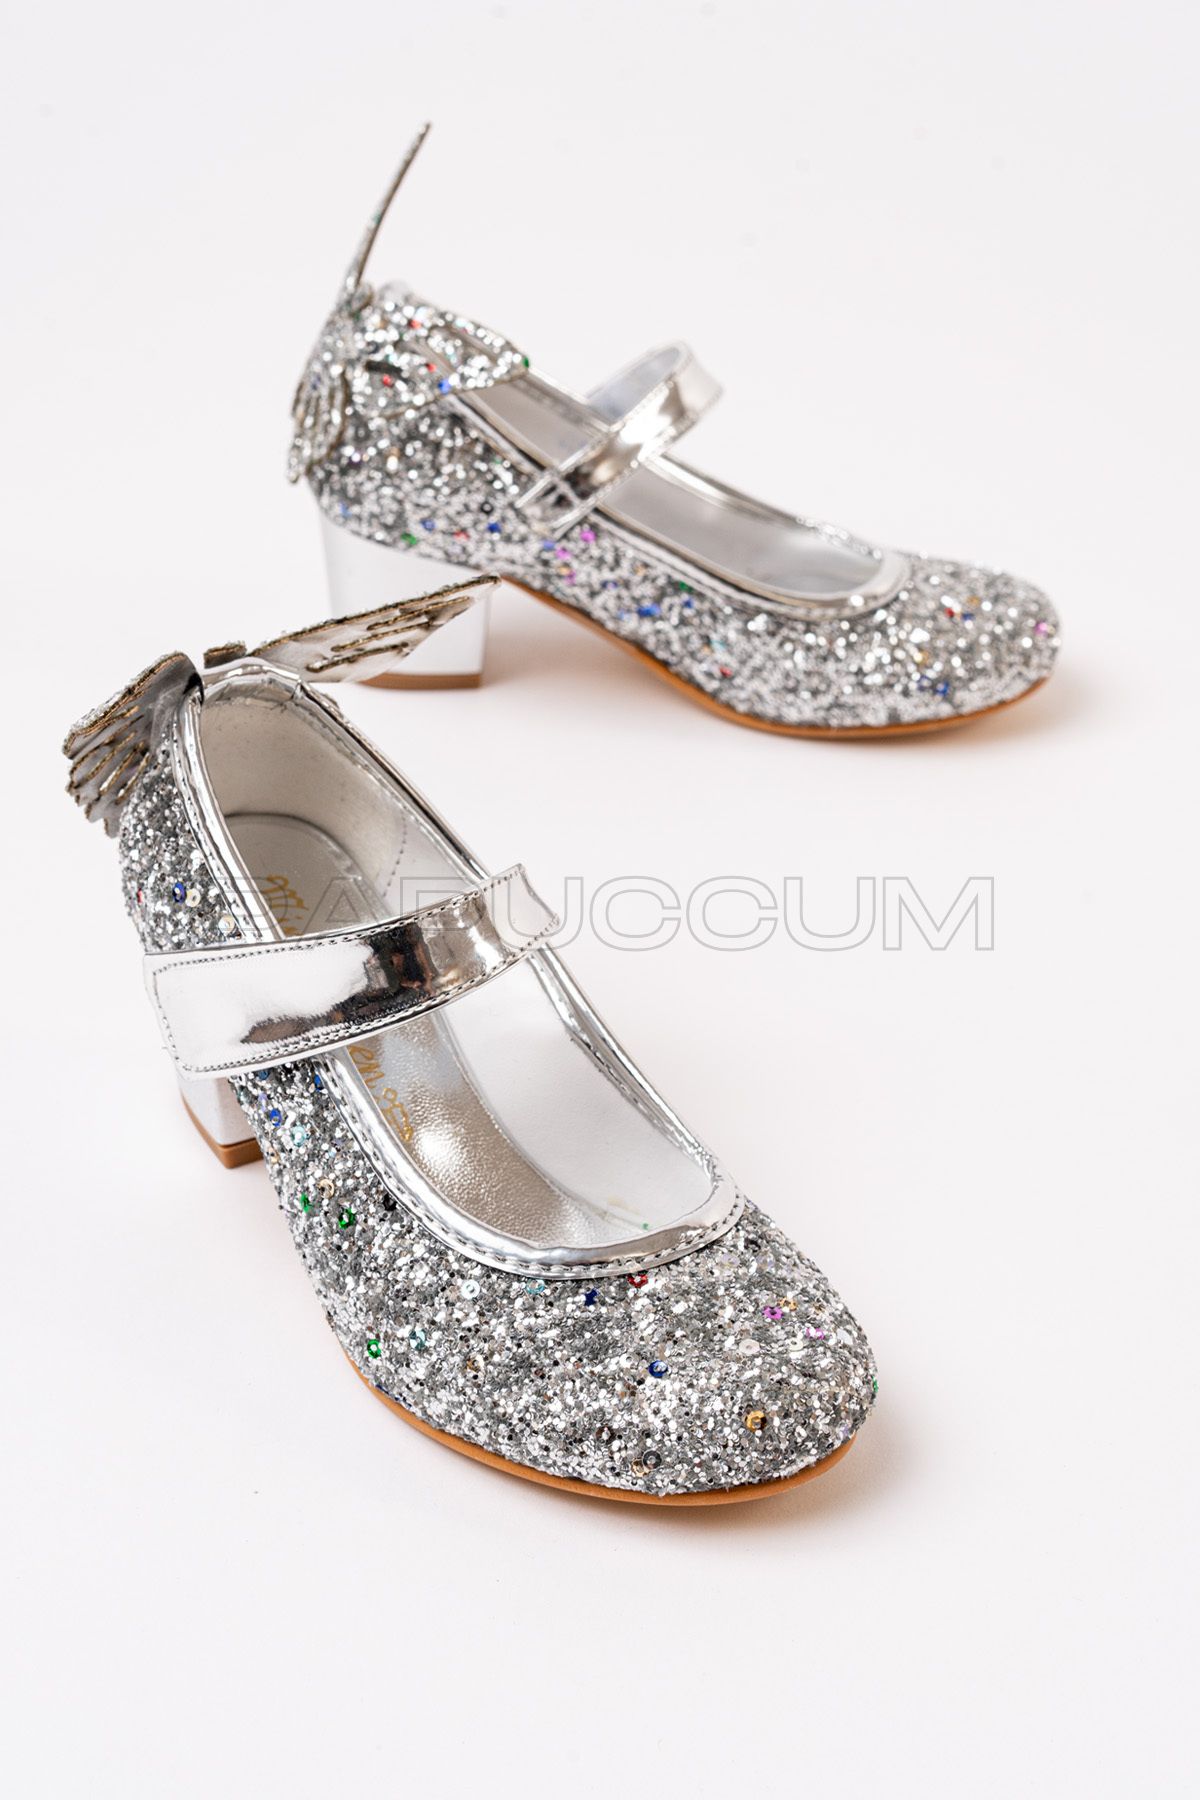 p papuccum ortopedi çocuk ayakkabıları Kız Çocuk Gümüş Kelebekli Topuklu Abiye Ayakkabı